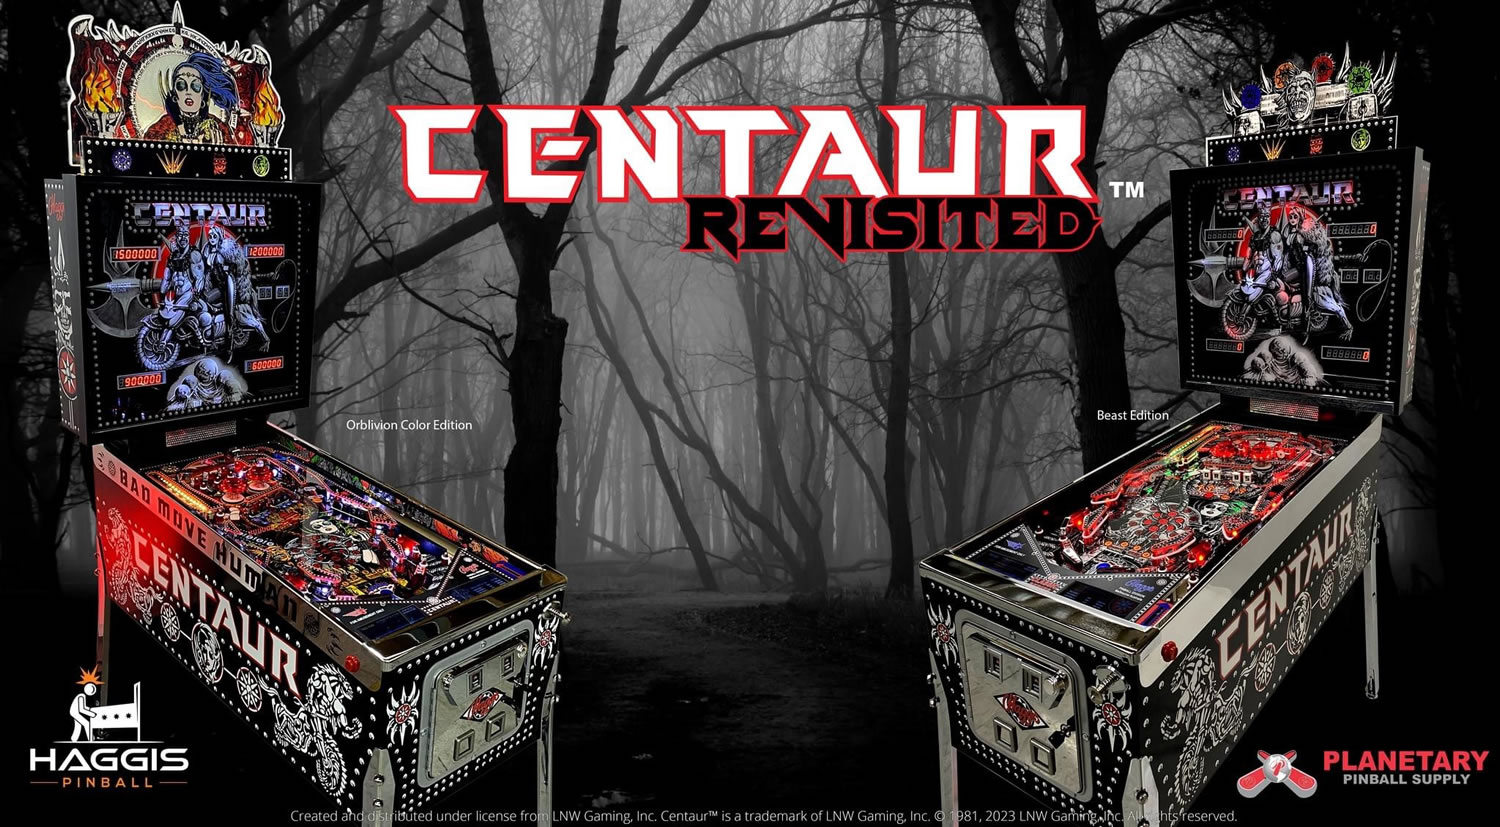 Centaur Revisited